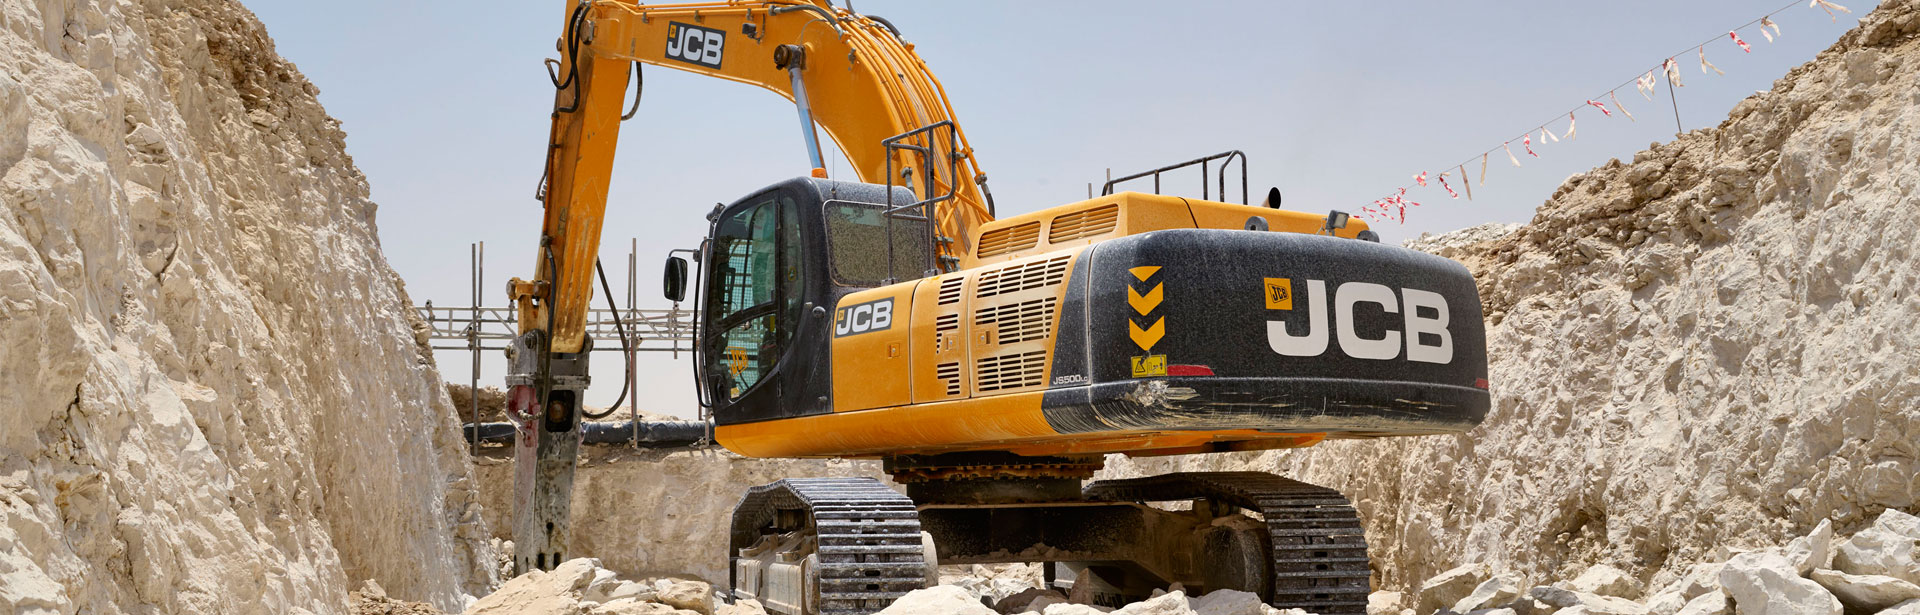 JCB JS500 Tracked Excavators Saudi Arabia